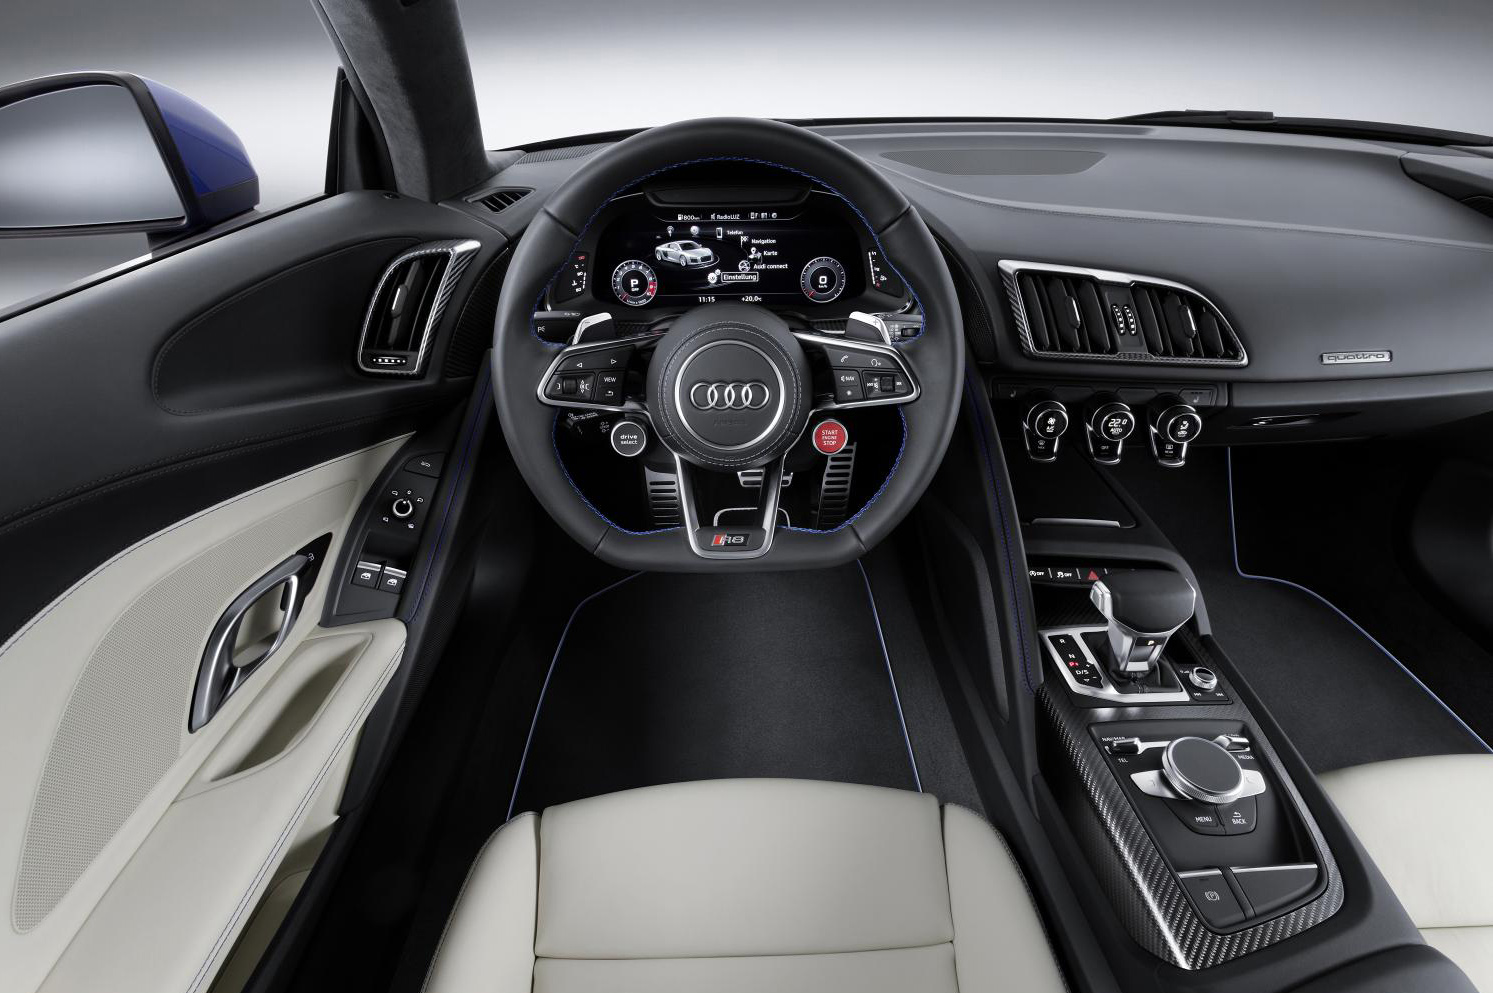 The new Audi R8 V10